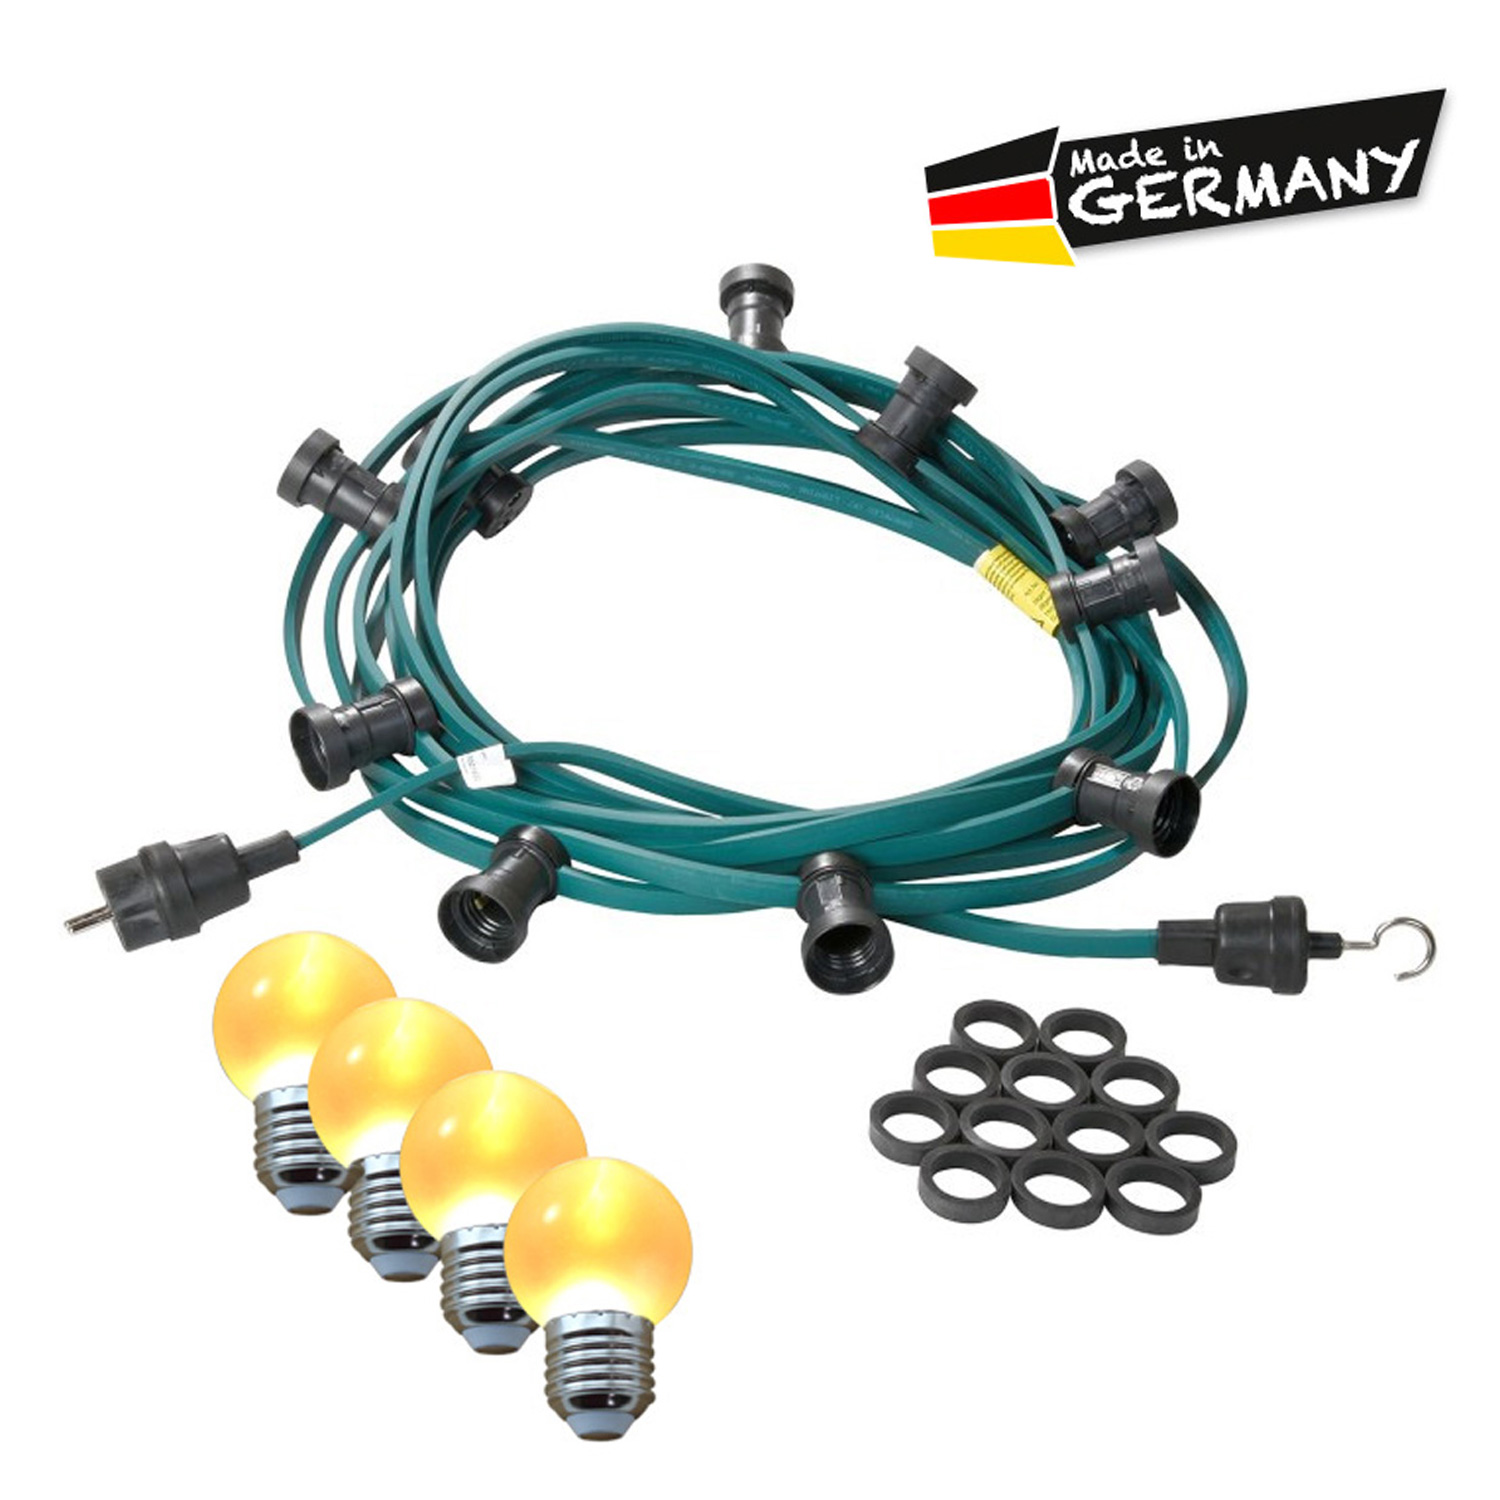 Illu-/Partylichterkette 40m | Außenlichterkette | Made in Germany | 40 x ultra-warmweisse LED Kugeln